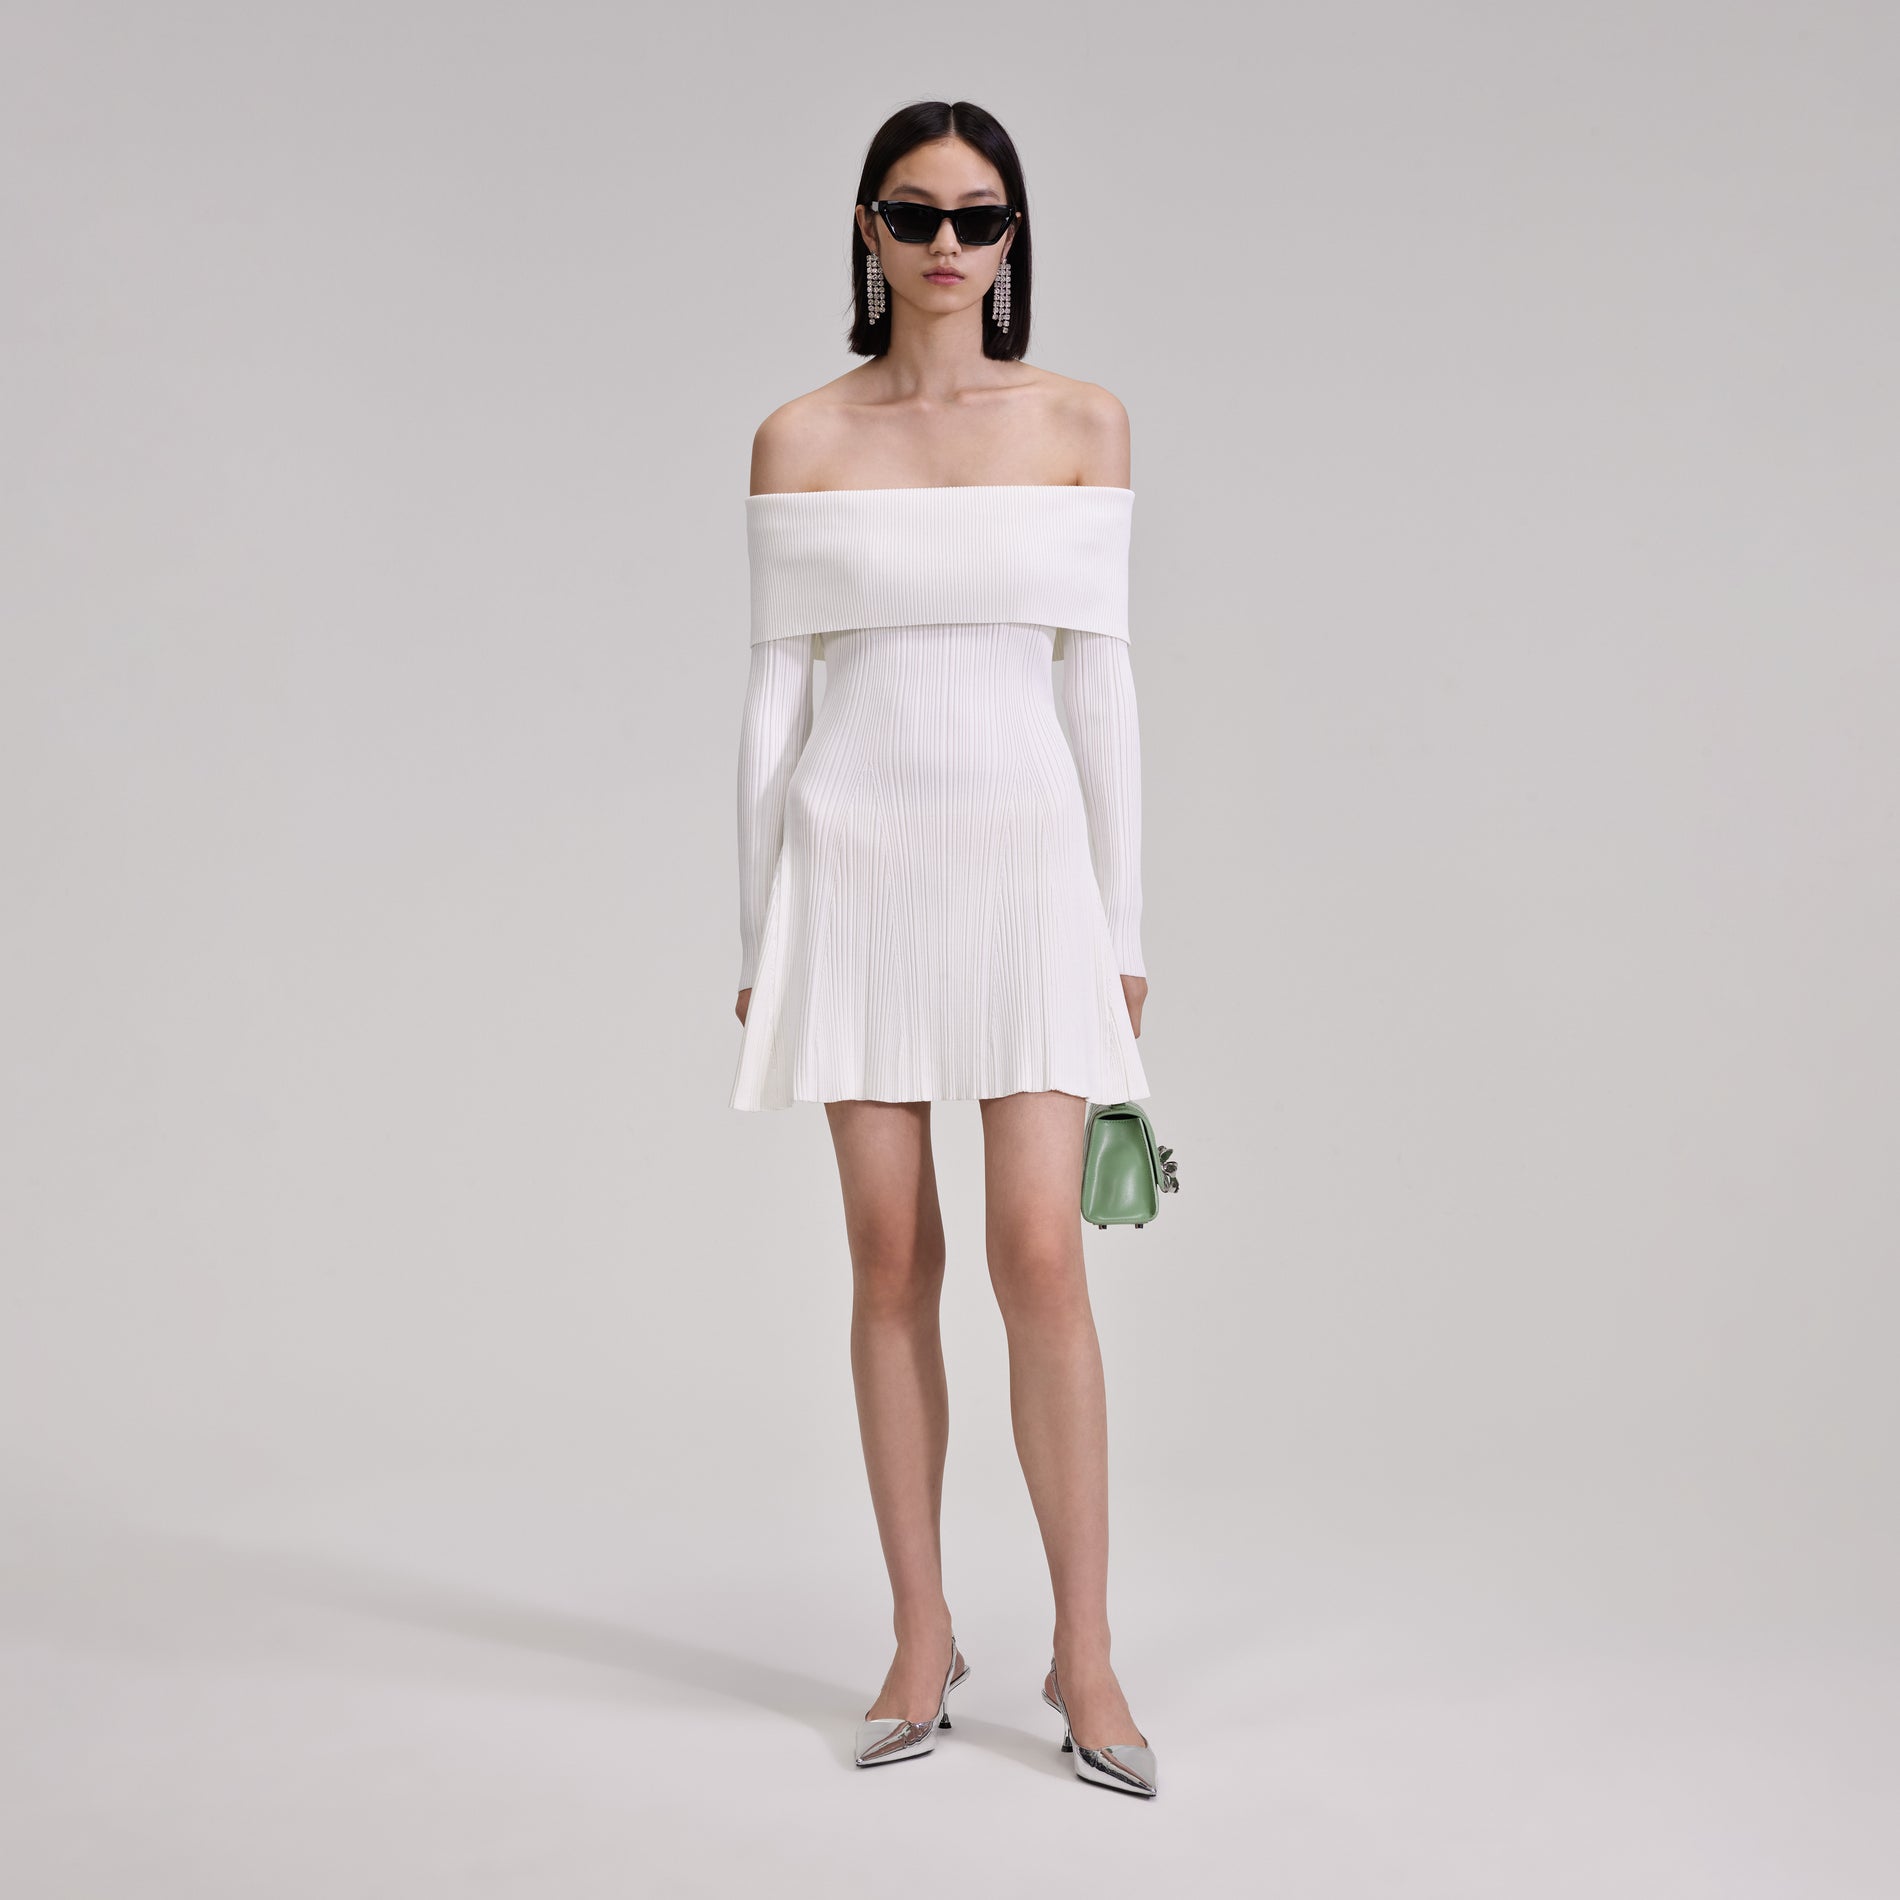 A woman wearing the White Knit Mini Dress